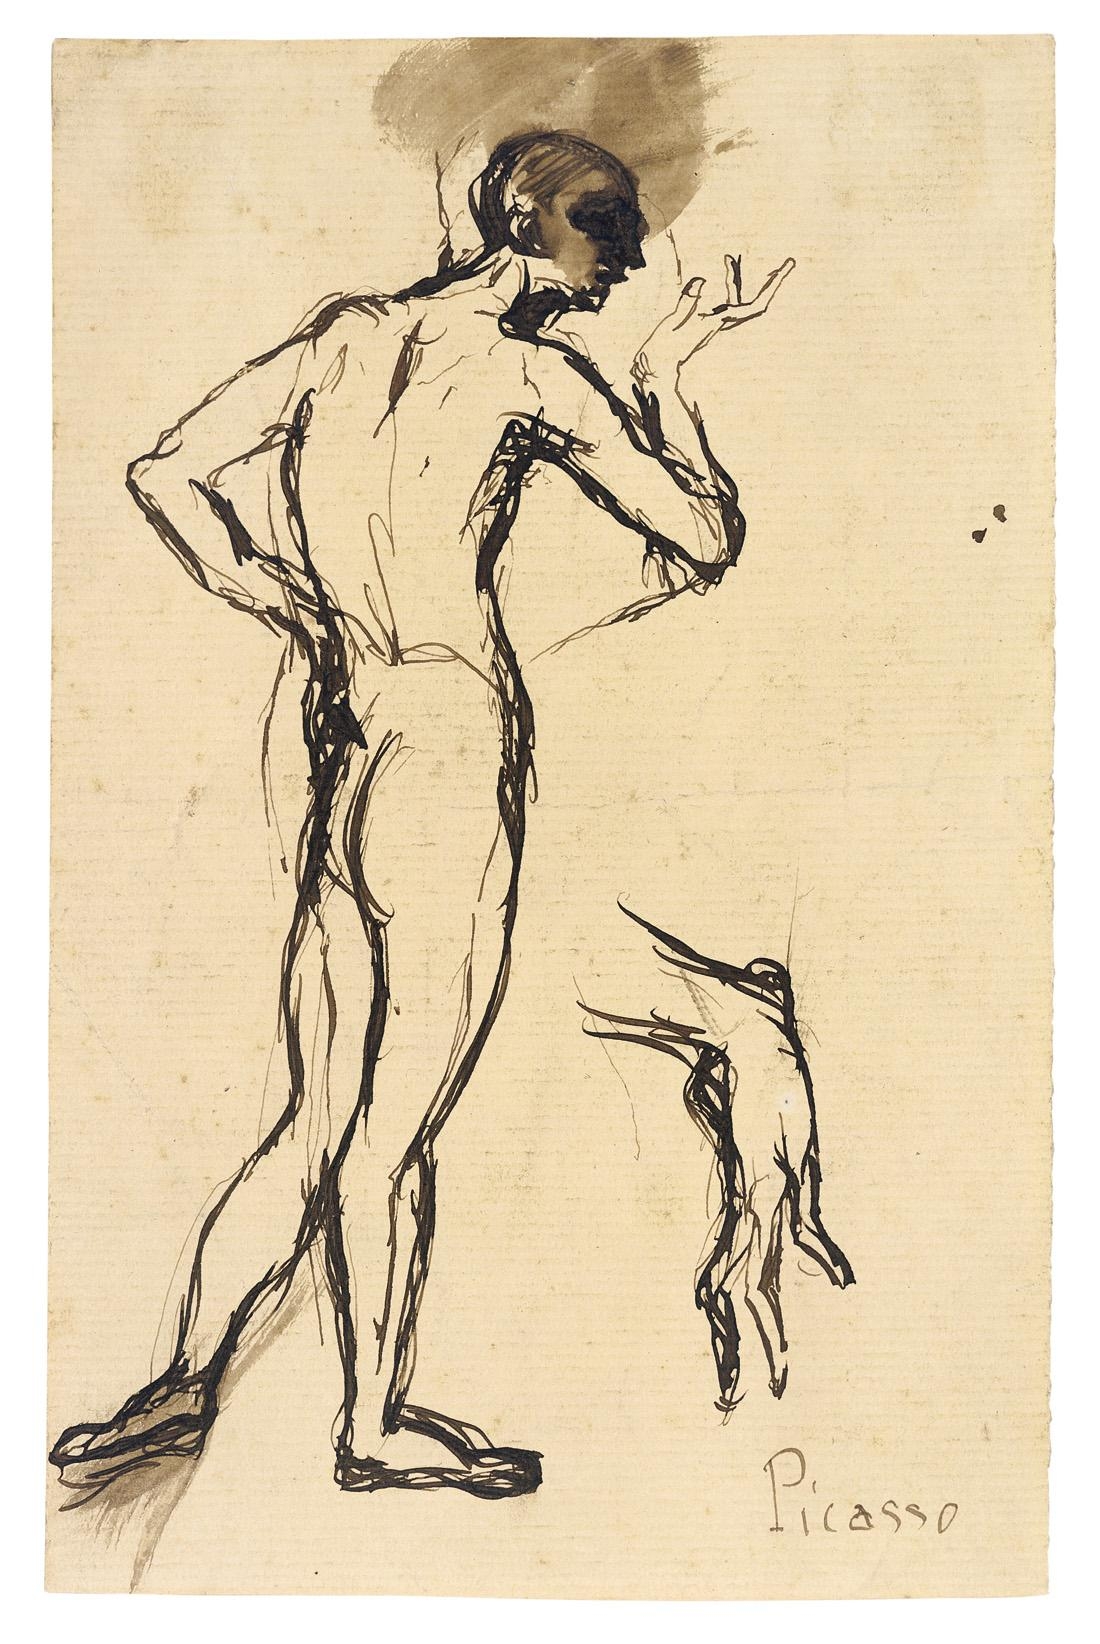 Artwork by Pablo Picasso, Stehender männlicher Akt mit Handstudie, Made of Pen and India ink on laid paper